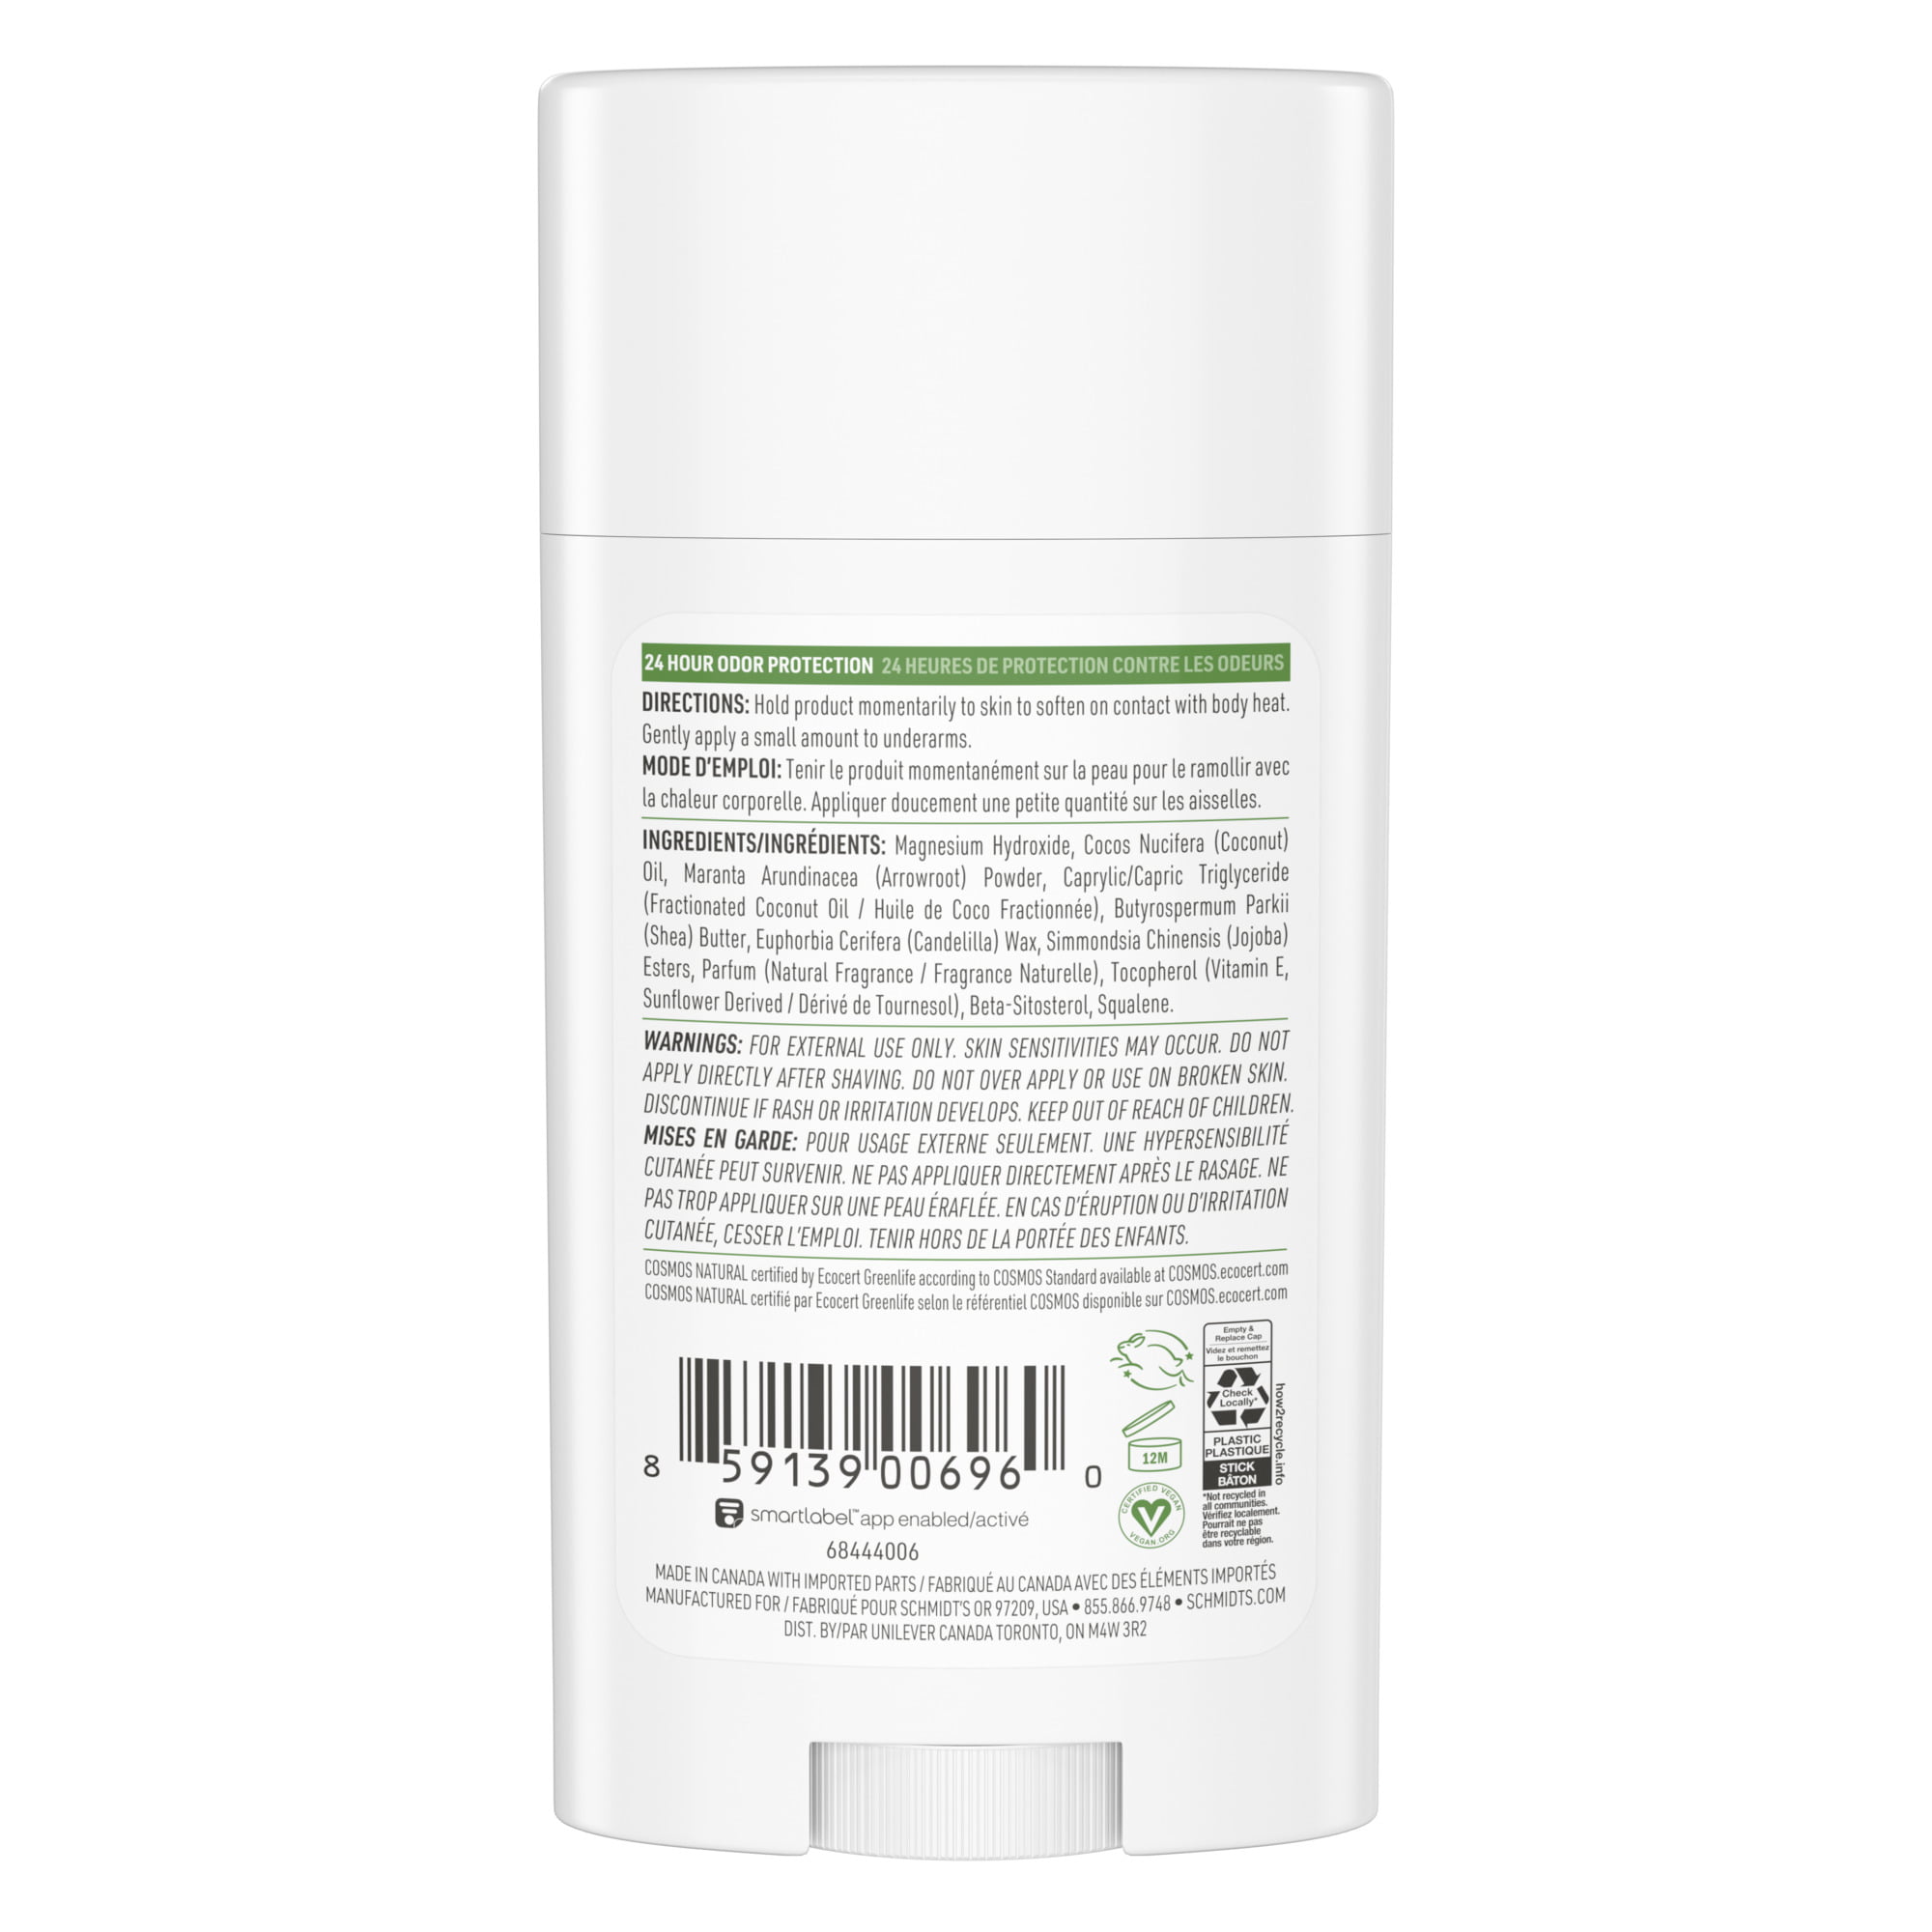 Schmidt's Natural Sensitive Deodorant Stick 2.65 - Walmart.com